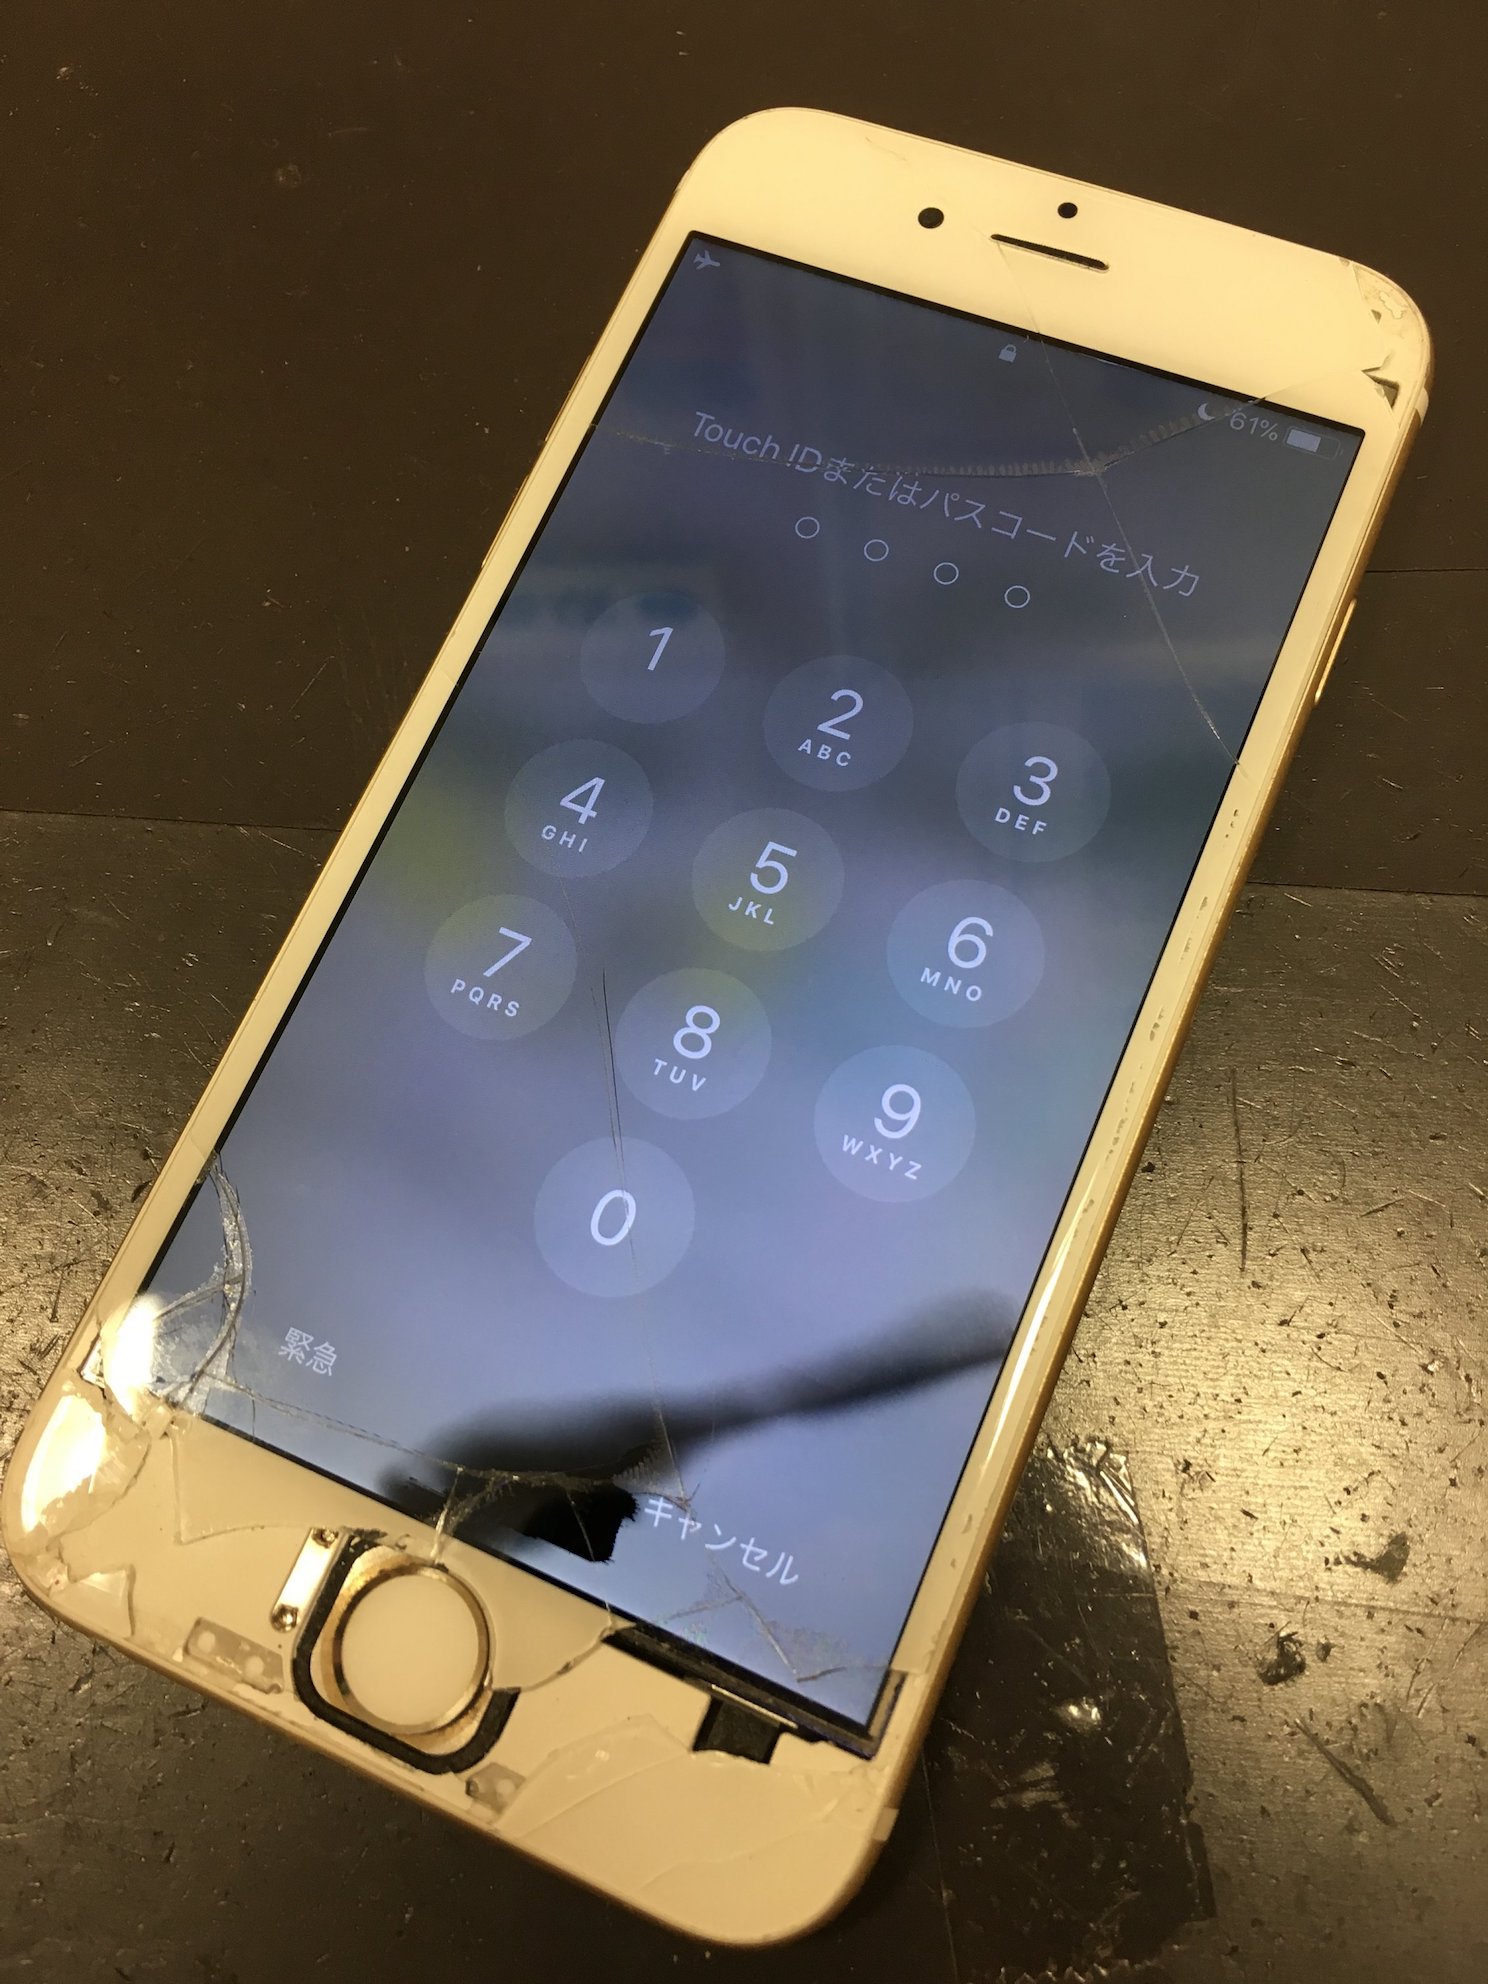 Iphoneの画面割れでこんなことまで起こる 液晶のシミや露出したホームボタン 全部修理できます Iphone 修理を鹿児島でお探しの方ならスマップル鹿児島店